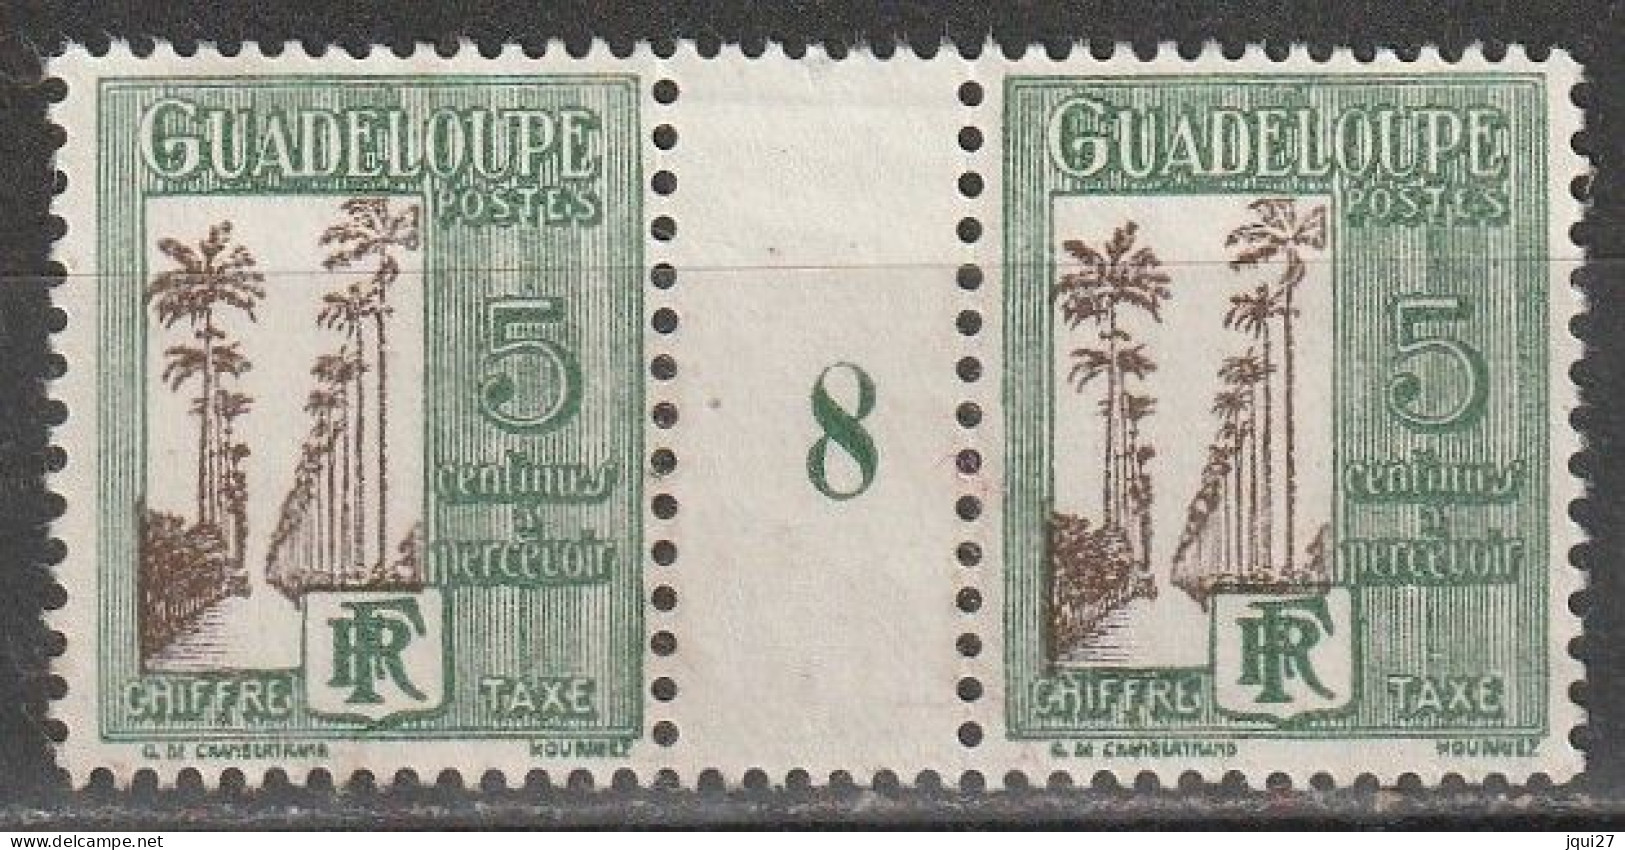 Guadeloupe Timbre Taxe N° 27 * Millésime 8 Voir Description - Segnatasse